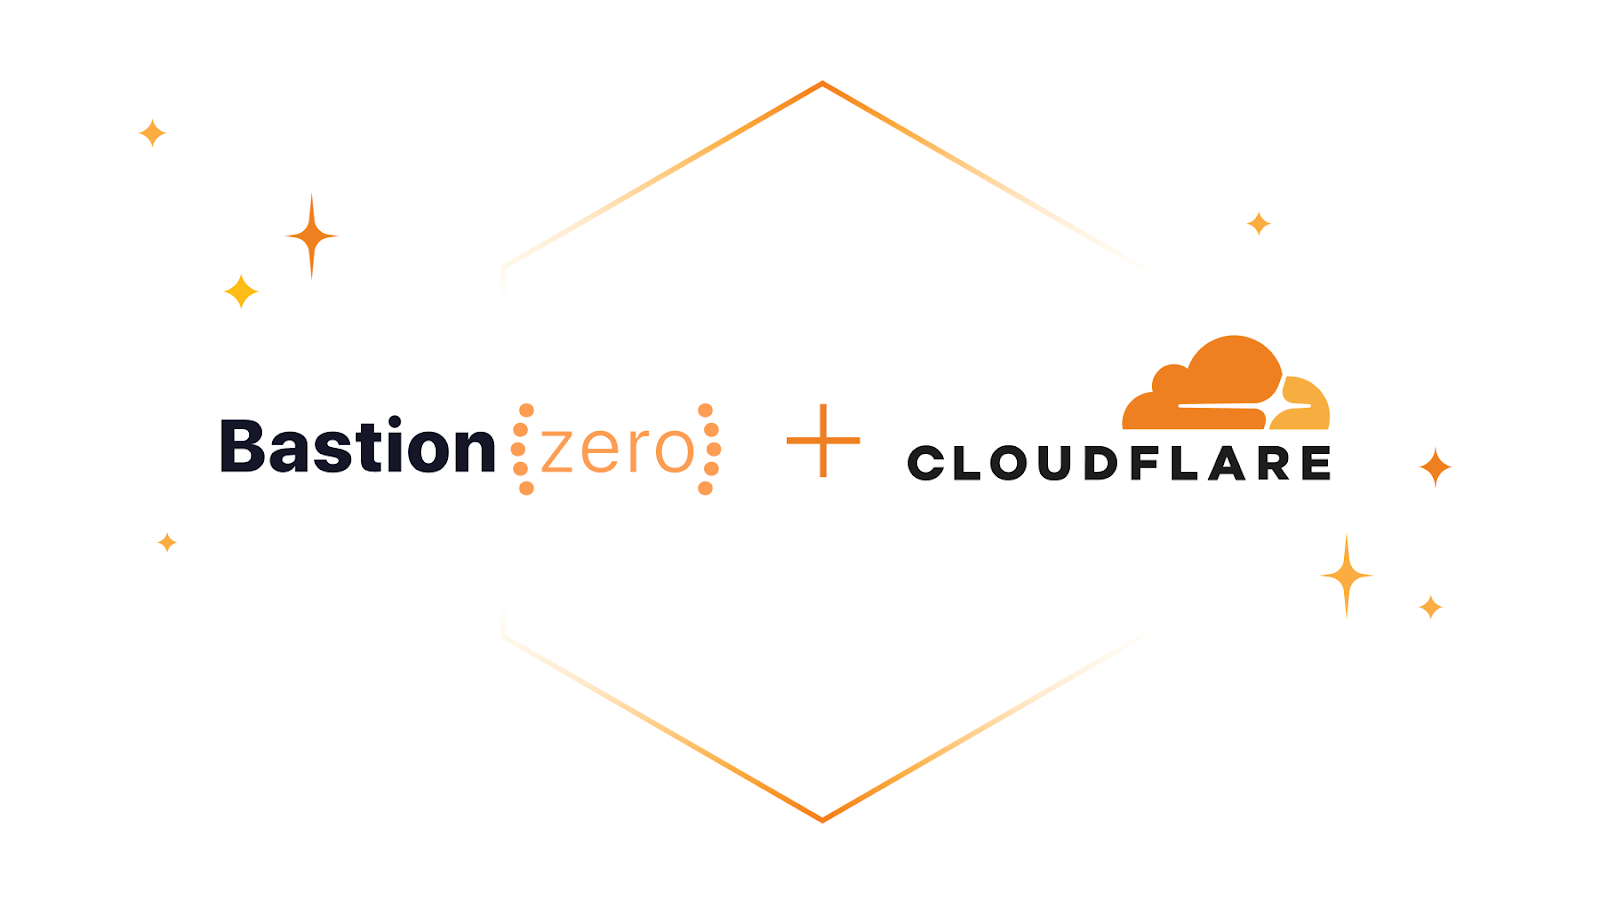 CloudflareがBastionZeroの買収によりゼロトラストアクセスをITインフラへ拡張